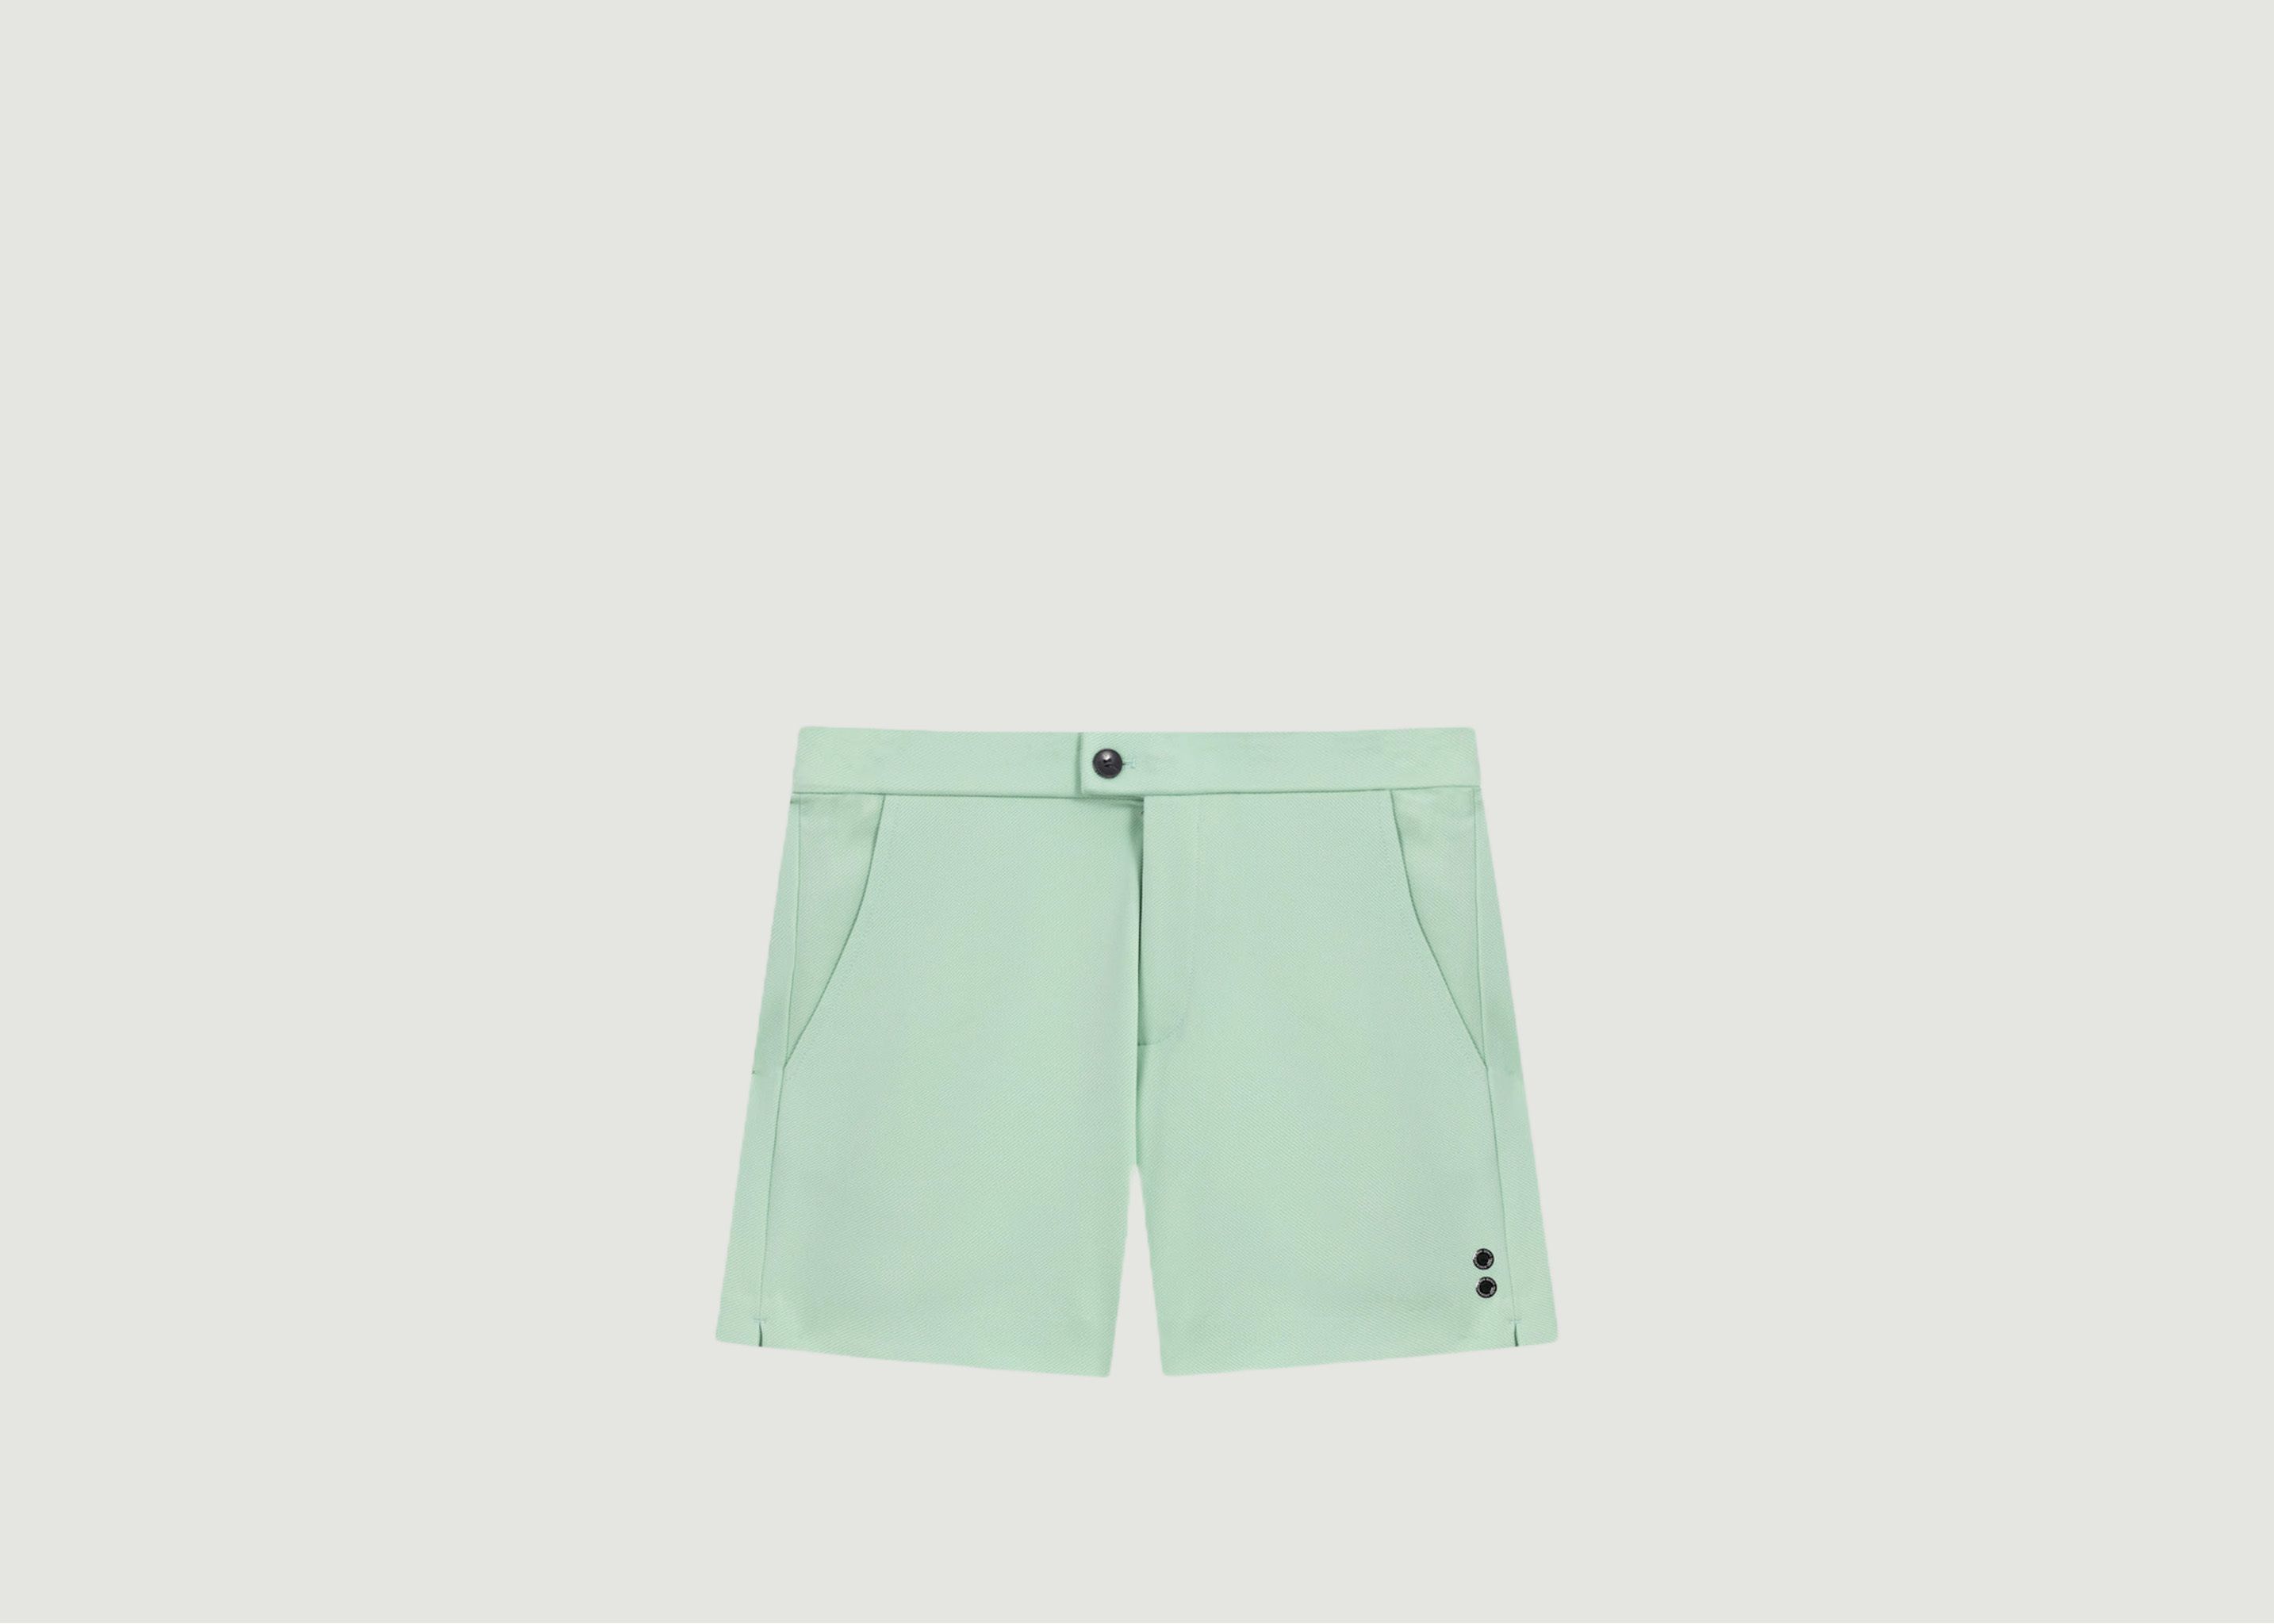 Tennis shorts - Ron Dorff